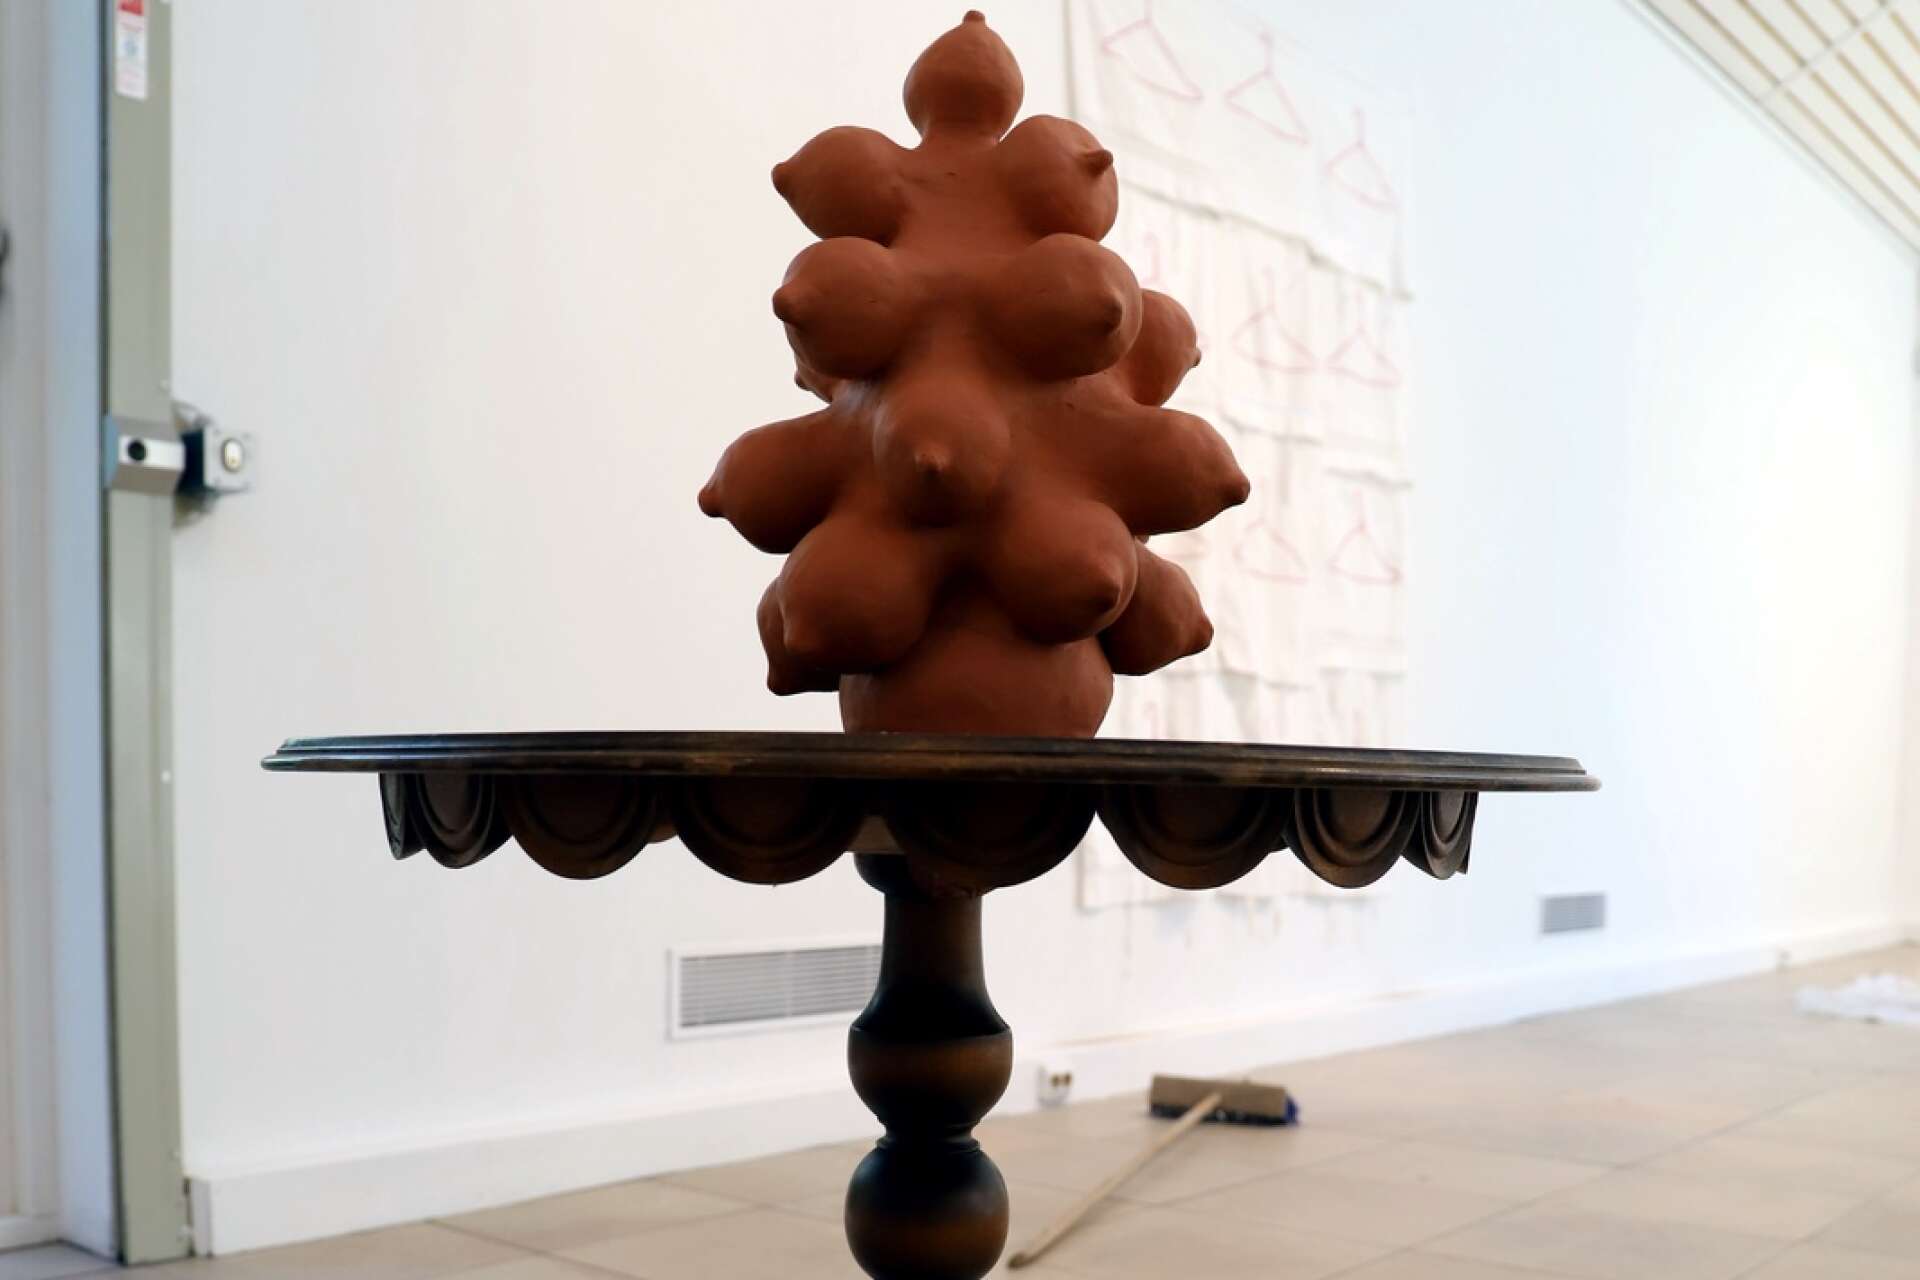 Skulpturen Trollmor har fått ett eget trollbord. Liv Midbøe arbetar med både keramik och textil, men trots kontrasterna som uppstår mellan dem, finns också många gemensamma teman i hennes båda linjer i konstnärskapet.